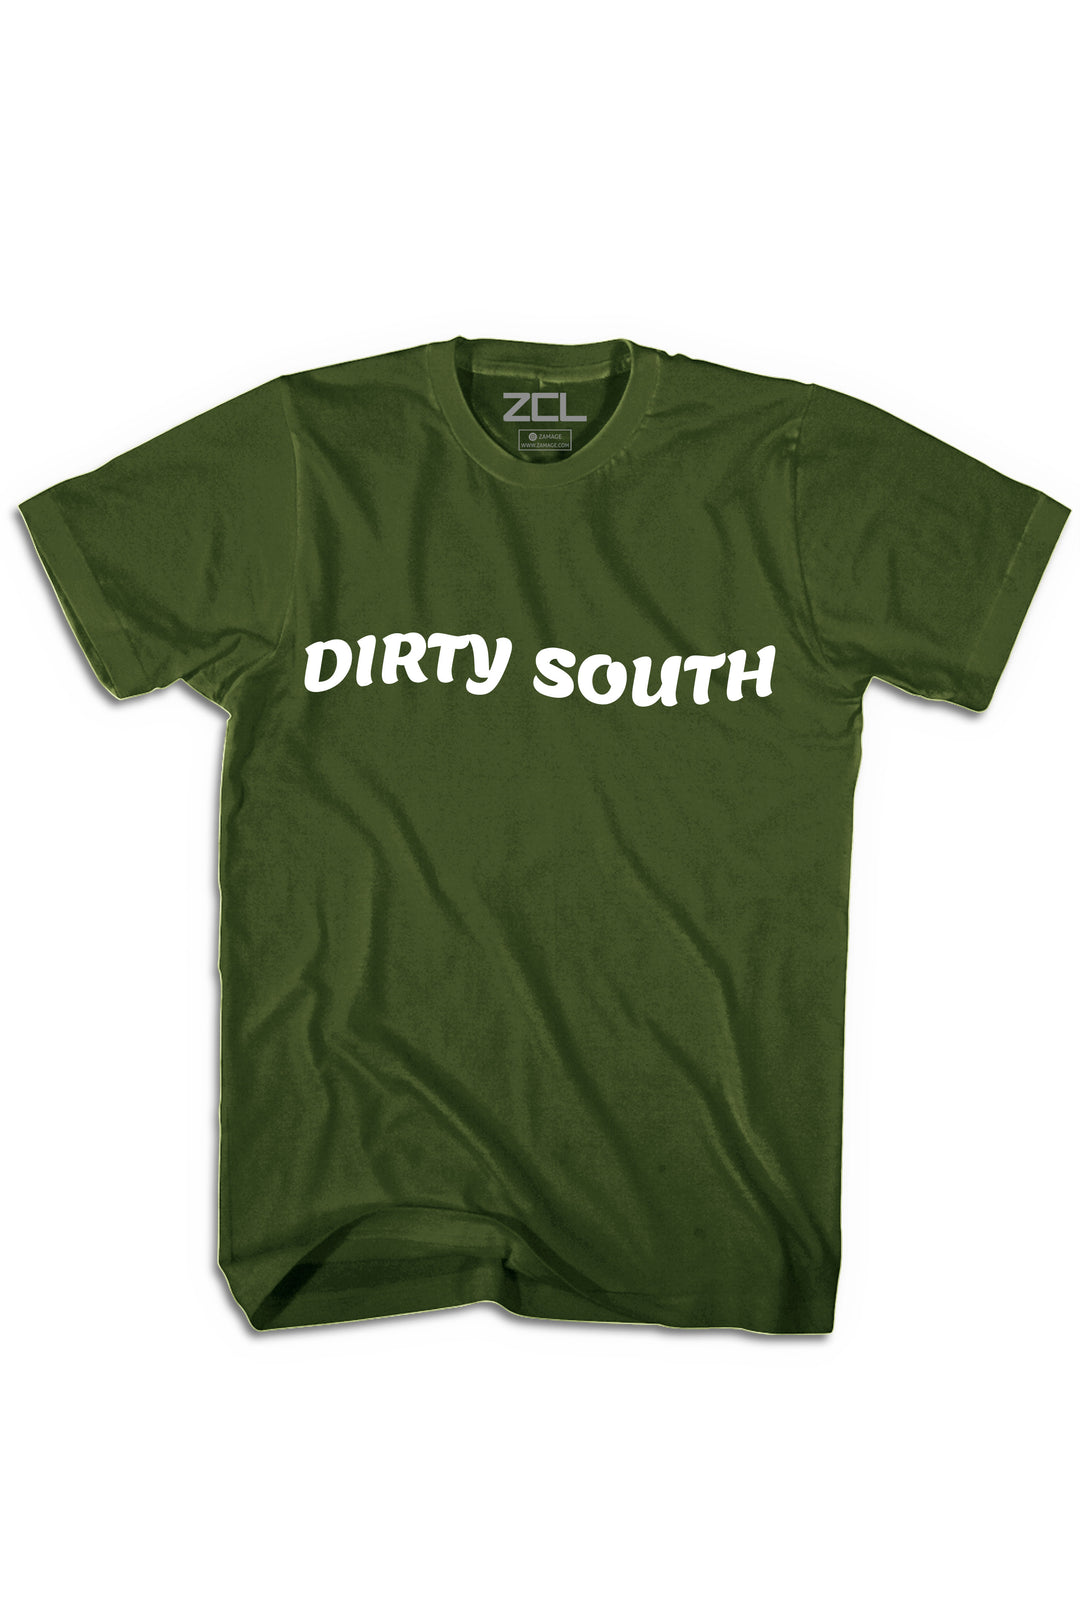 Dirty South Tee (White Logo) - Zamage